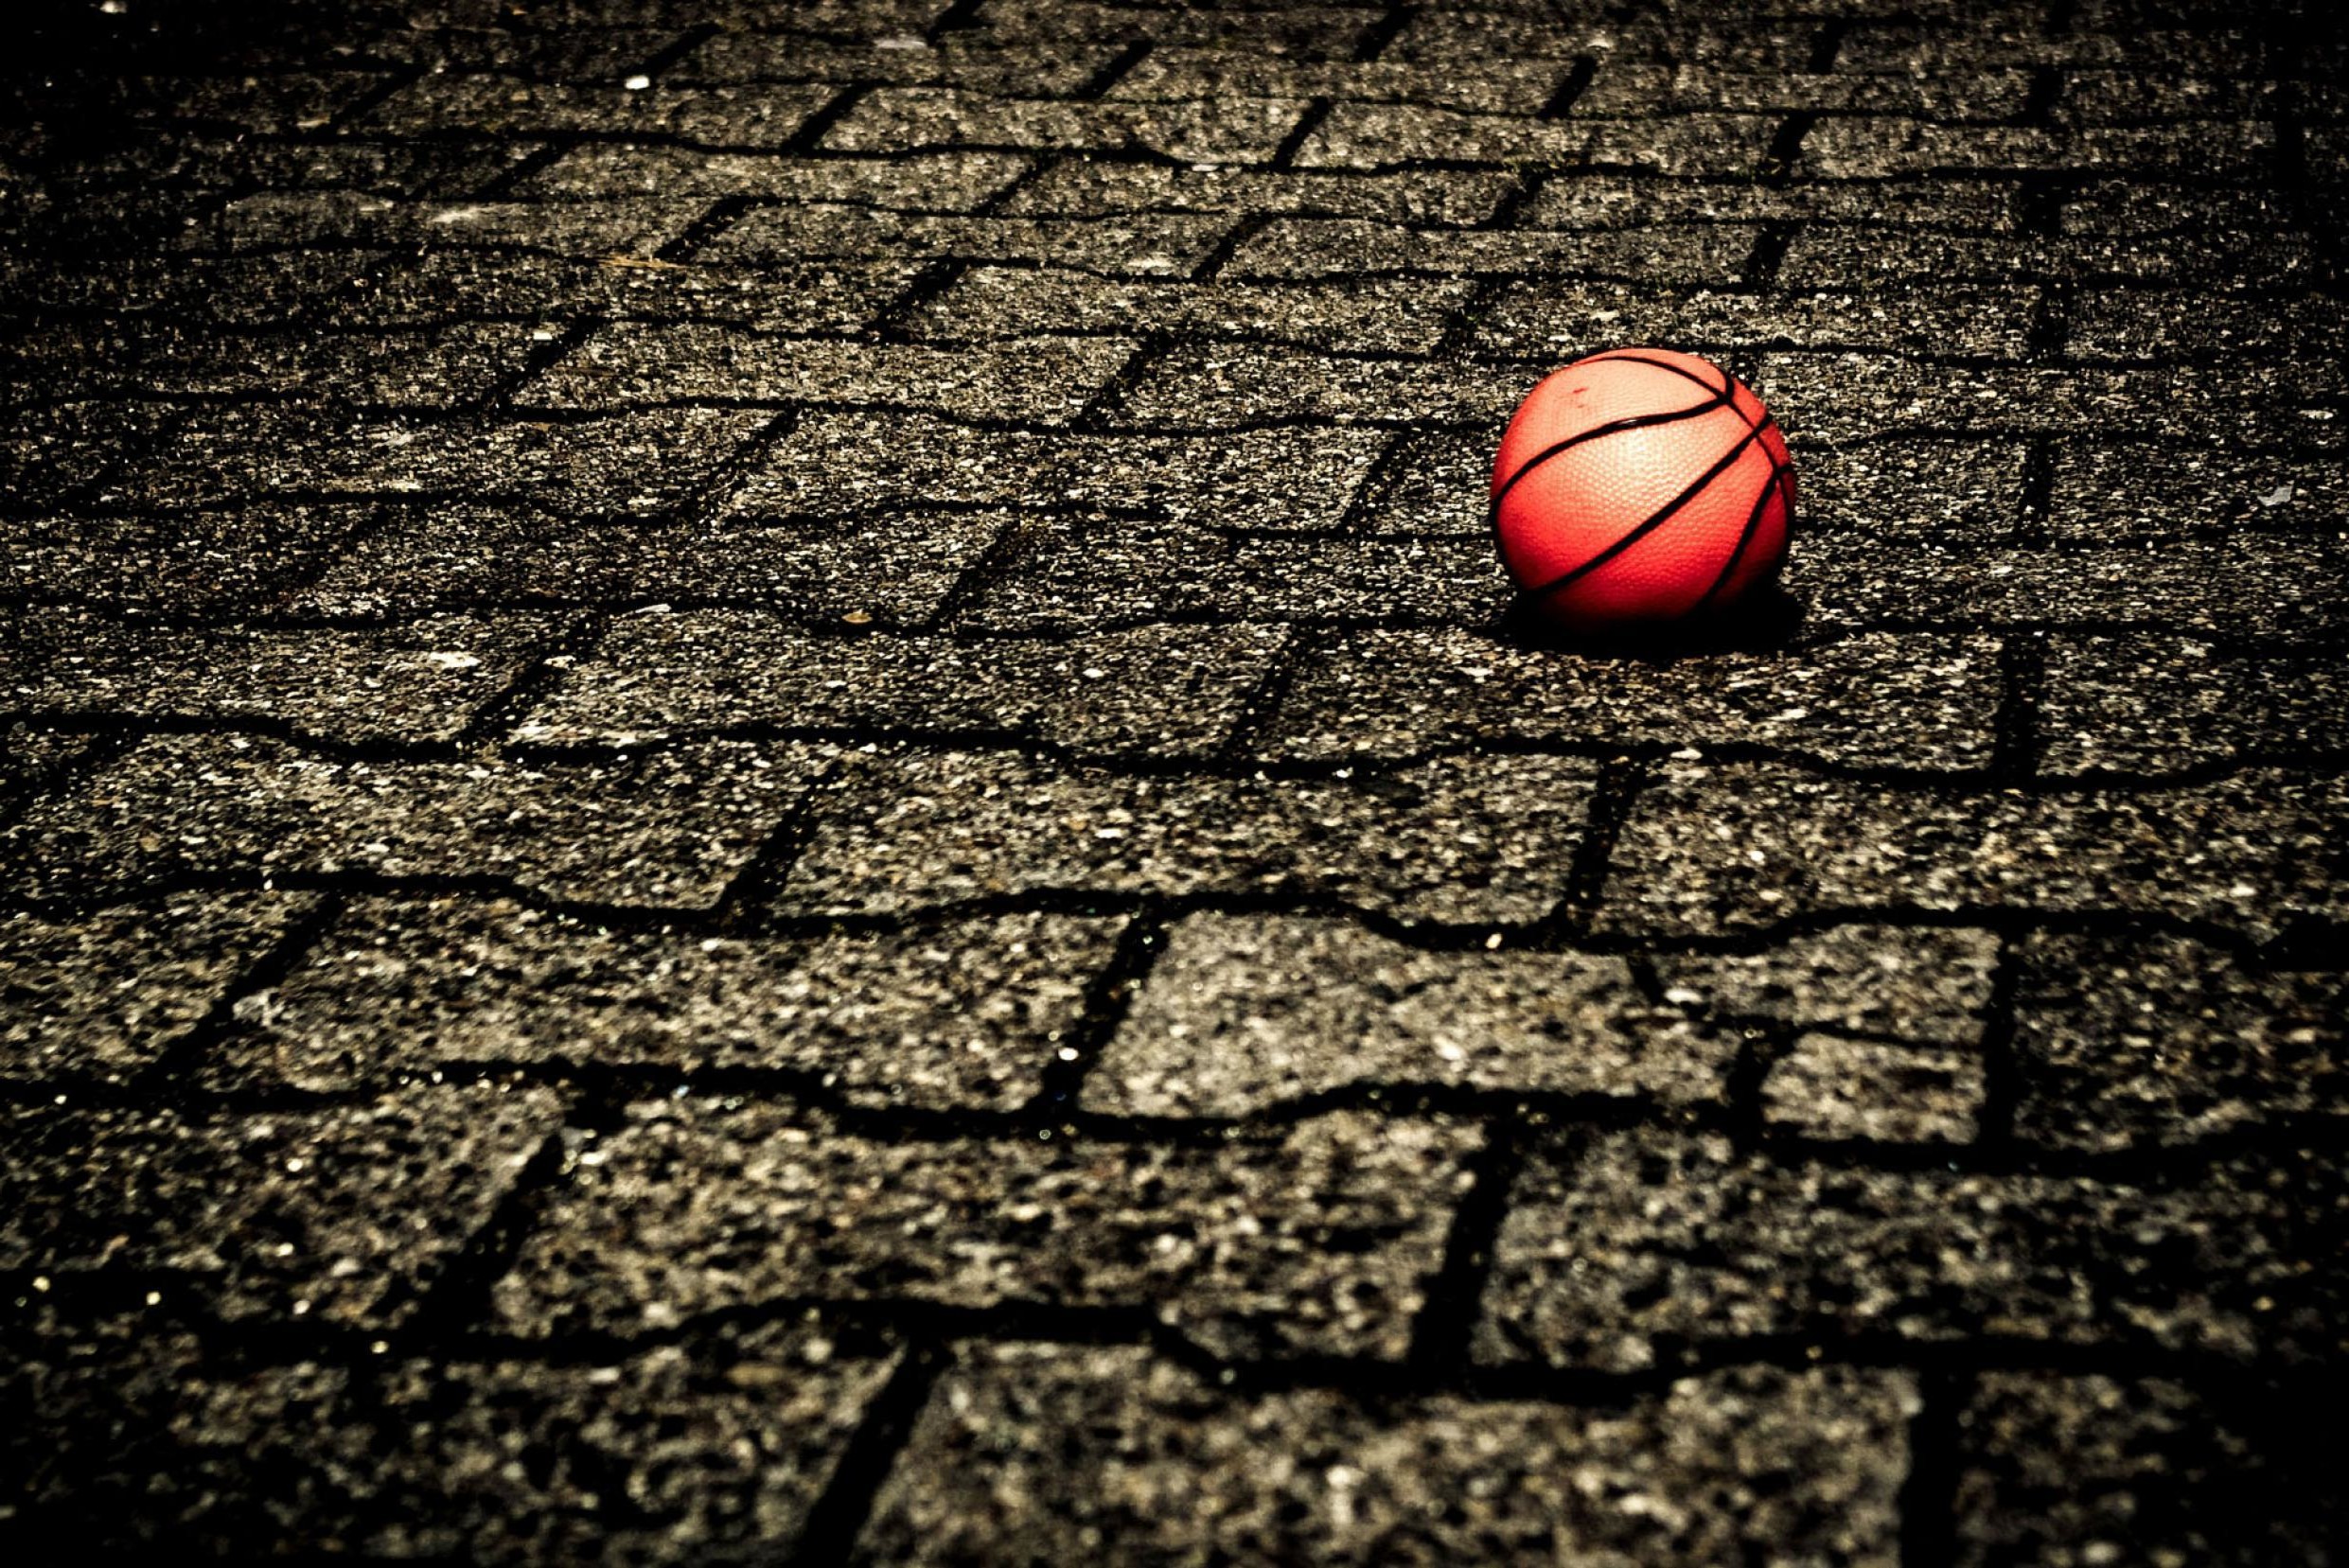 Cool Basketball Wallpaper Images - WallpaperSafari